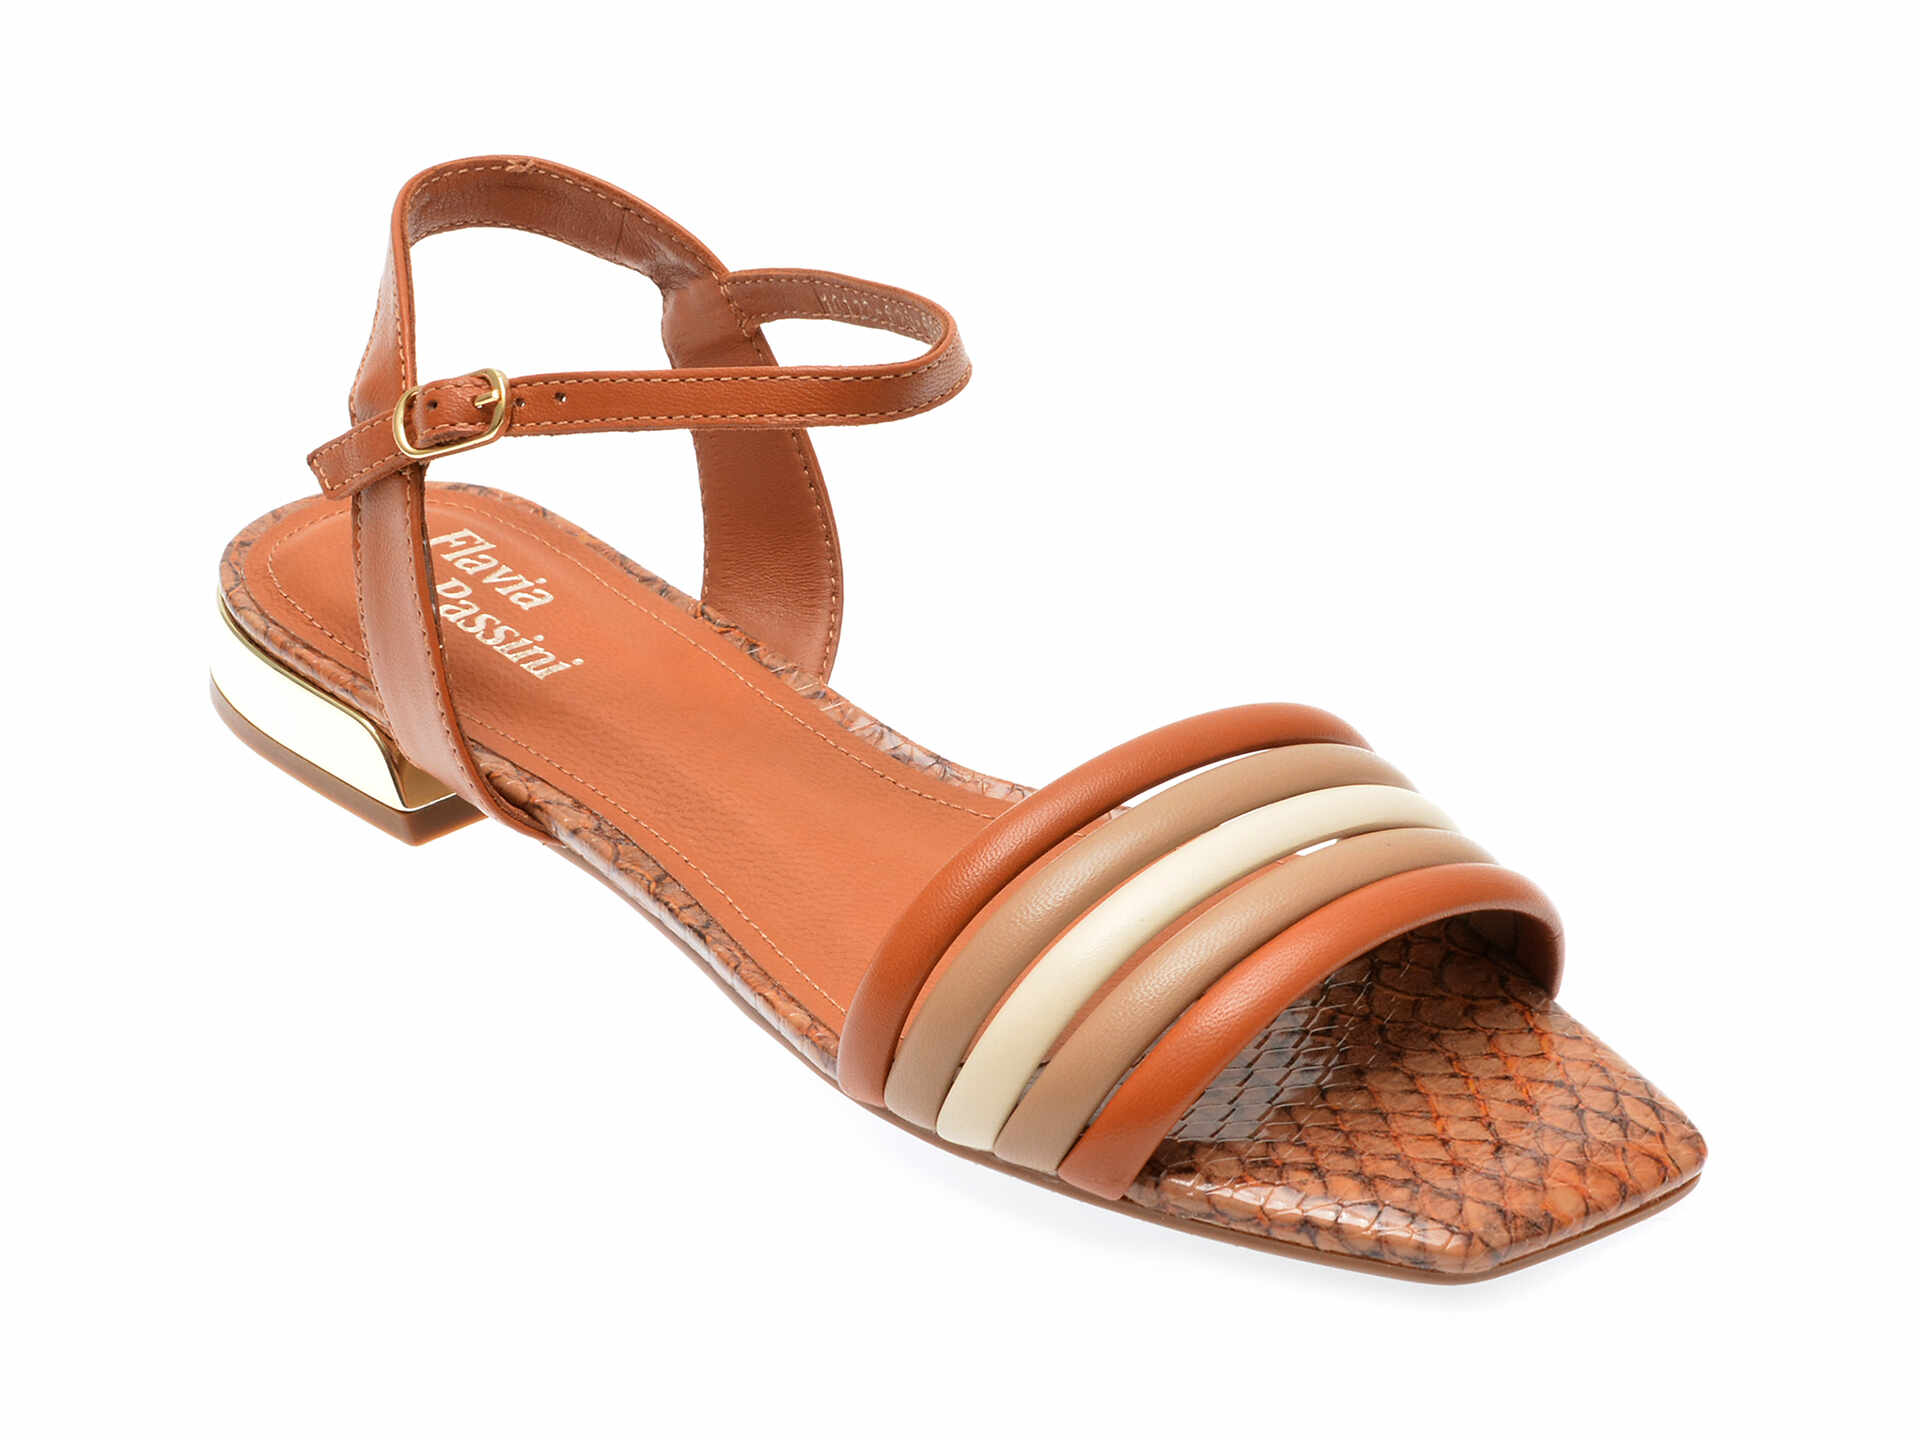 Sandale casual FLAVIA PASSINI maro, 1012691, din piele naturala